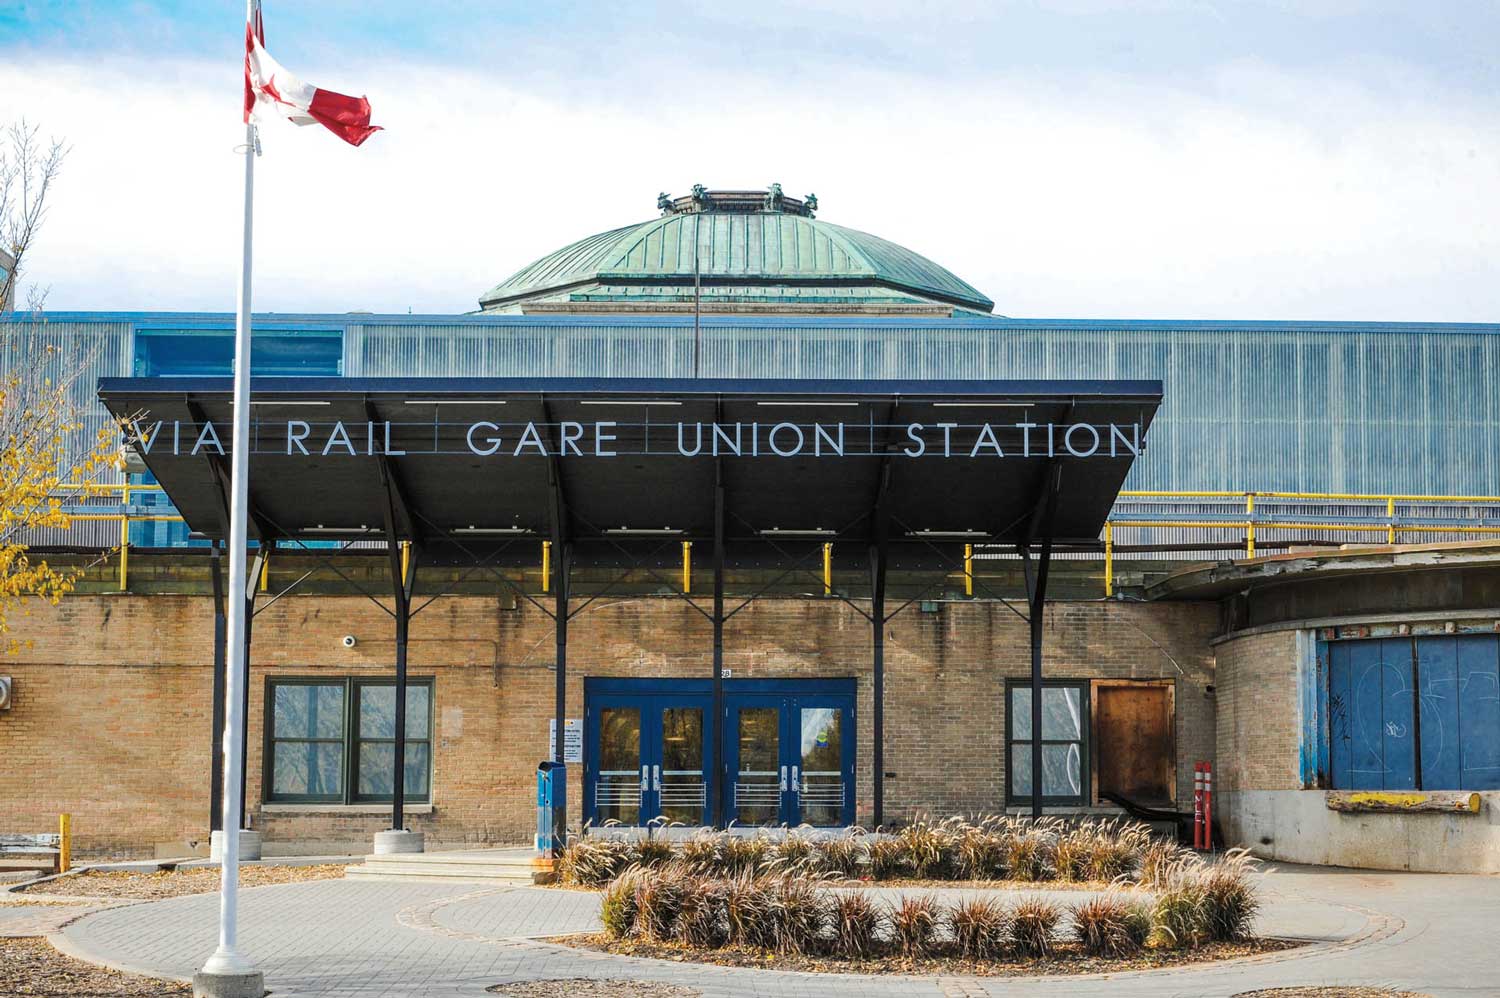 Extérieur de la gare Union de Winnipeg par Via Rail.